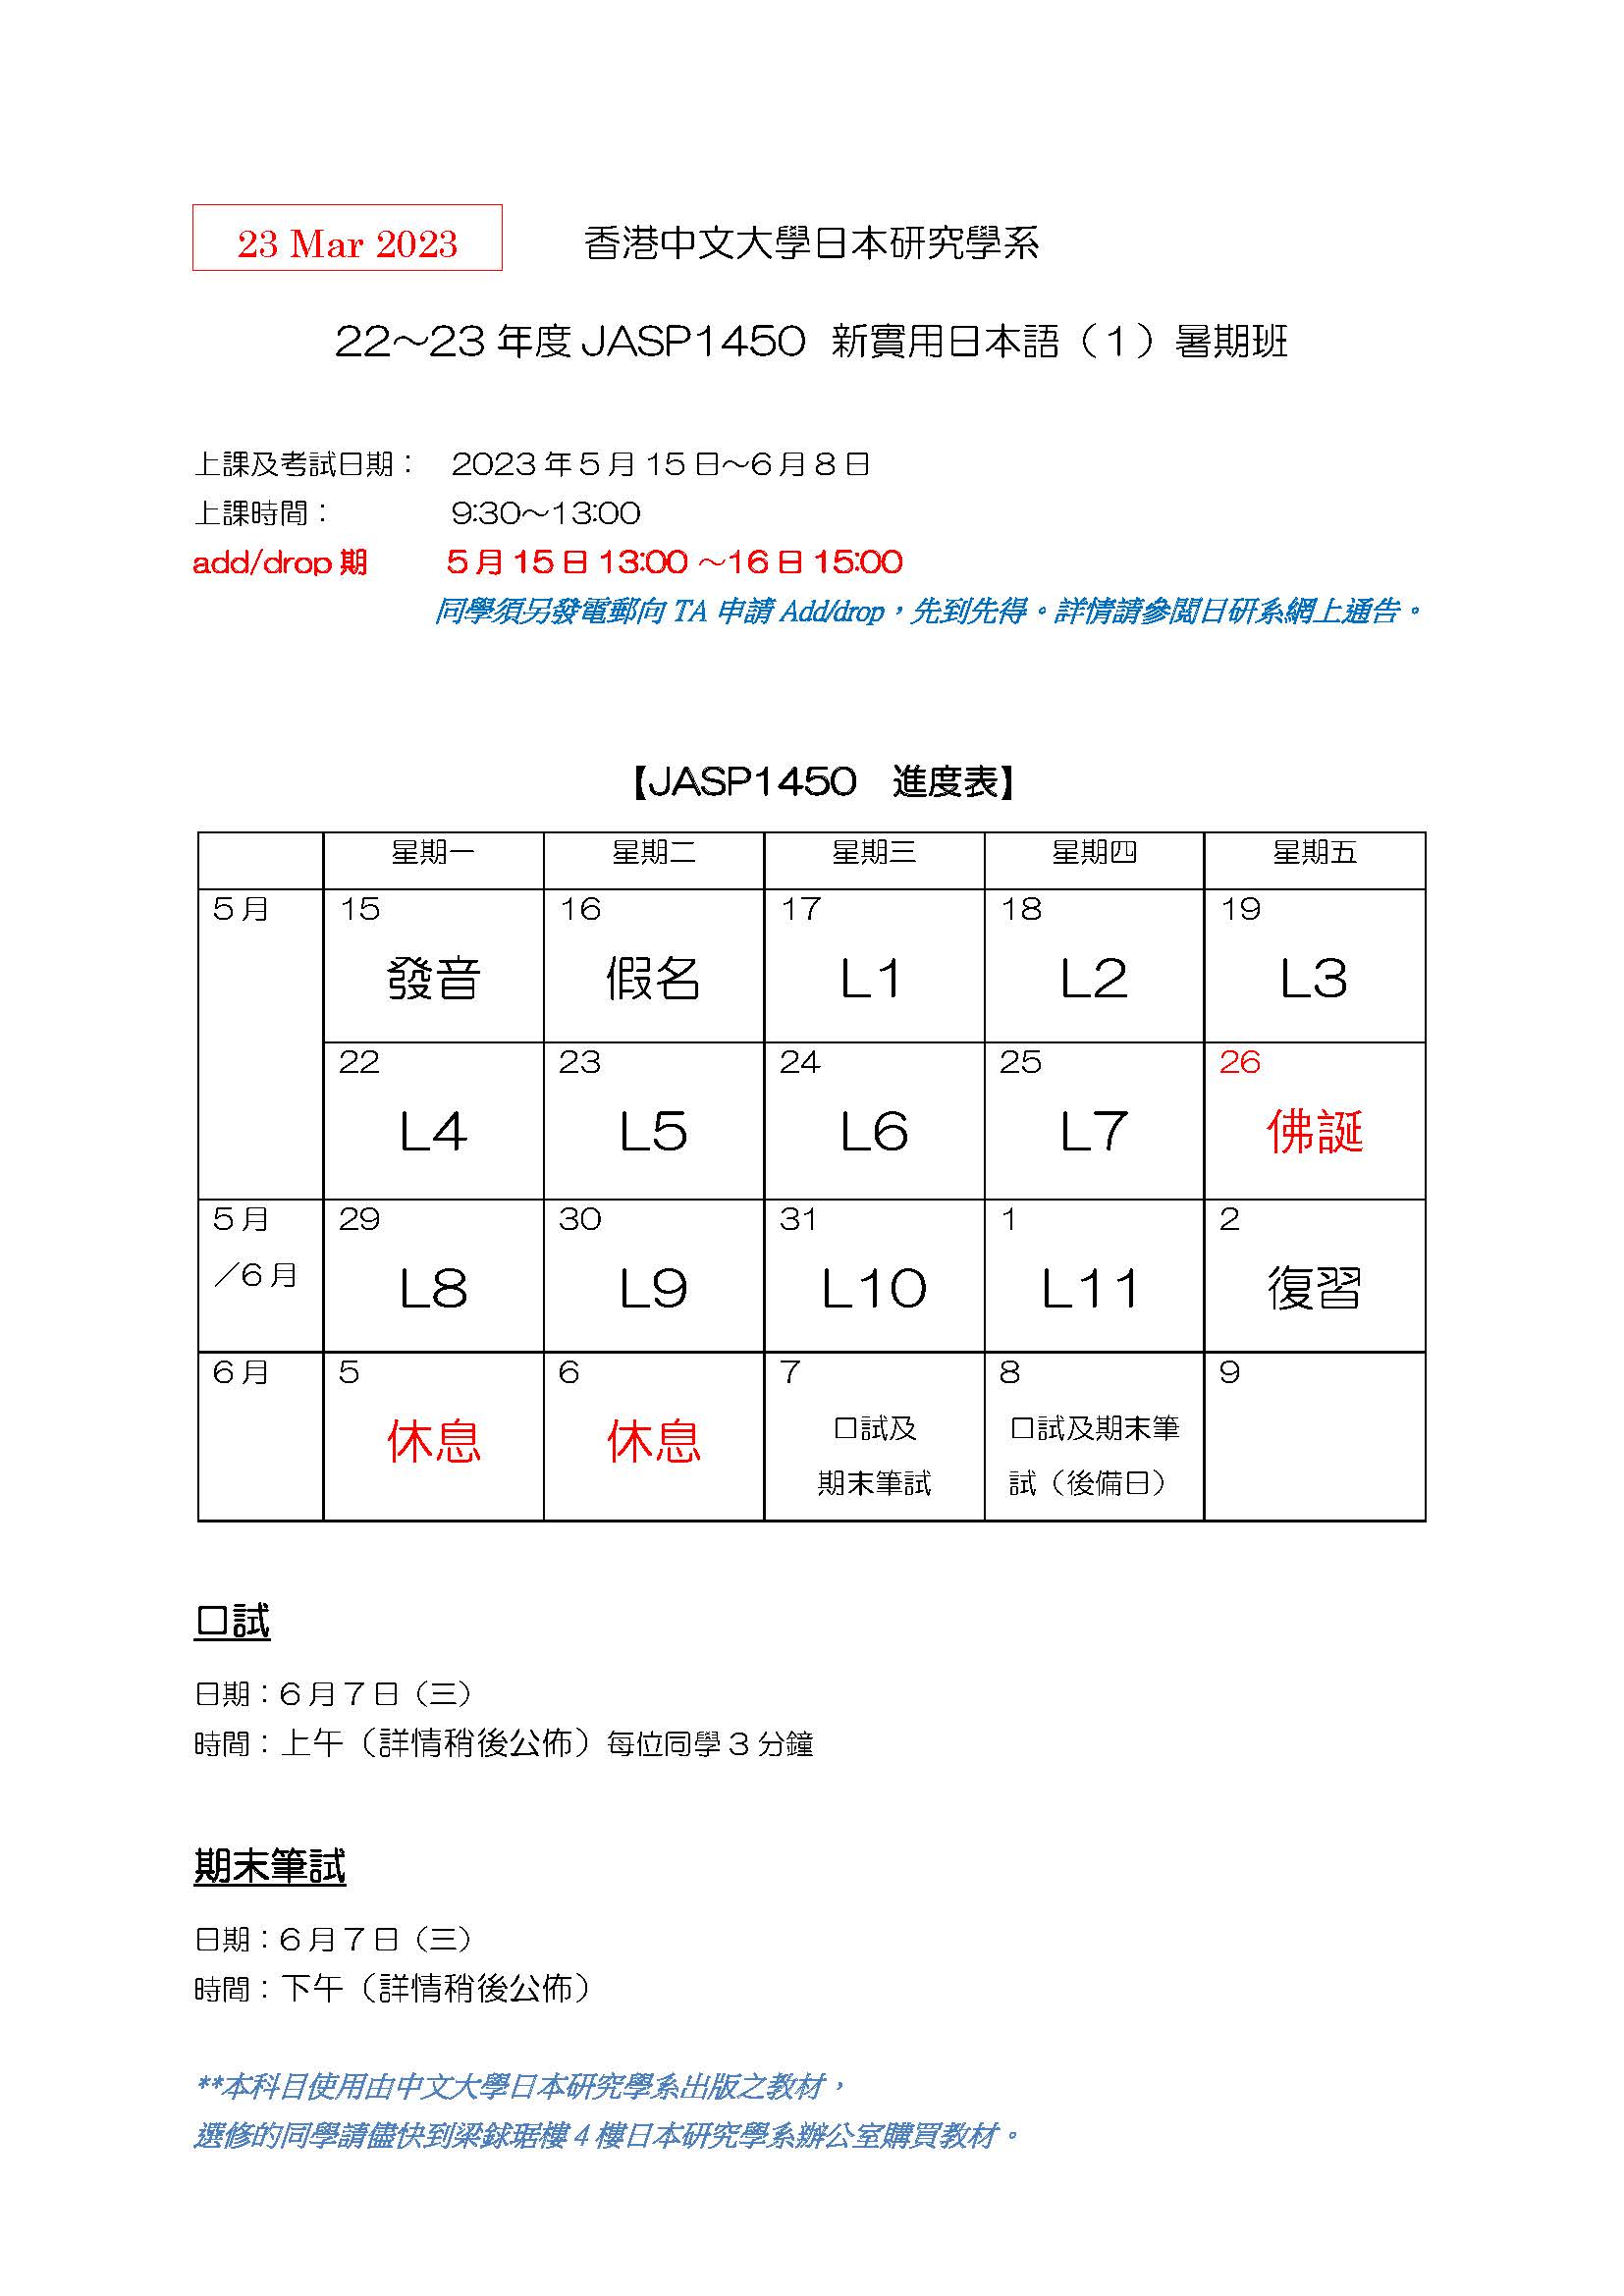 22-23_JASP1450-summer-schedule